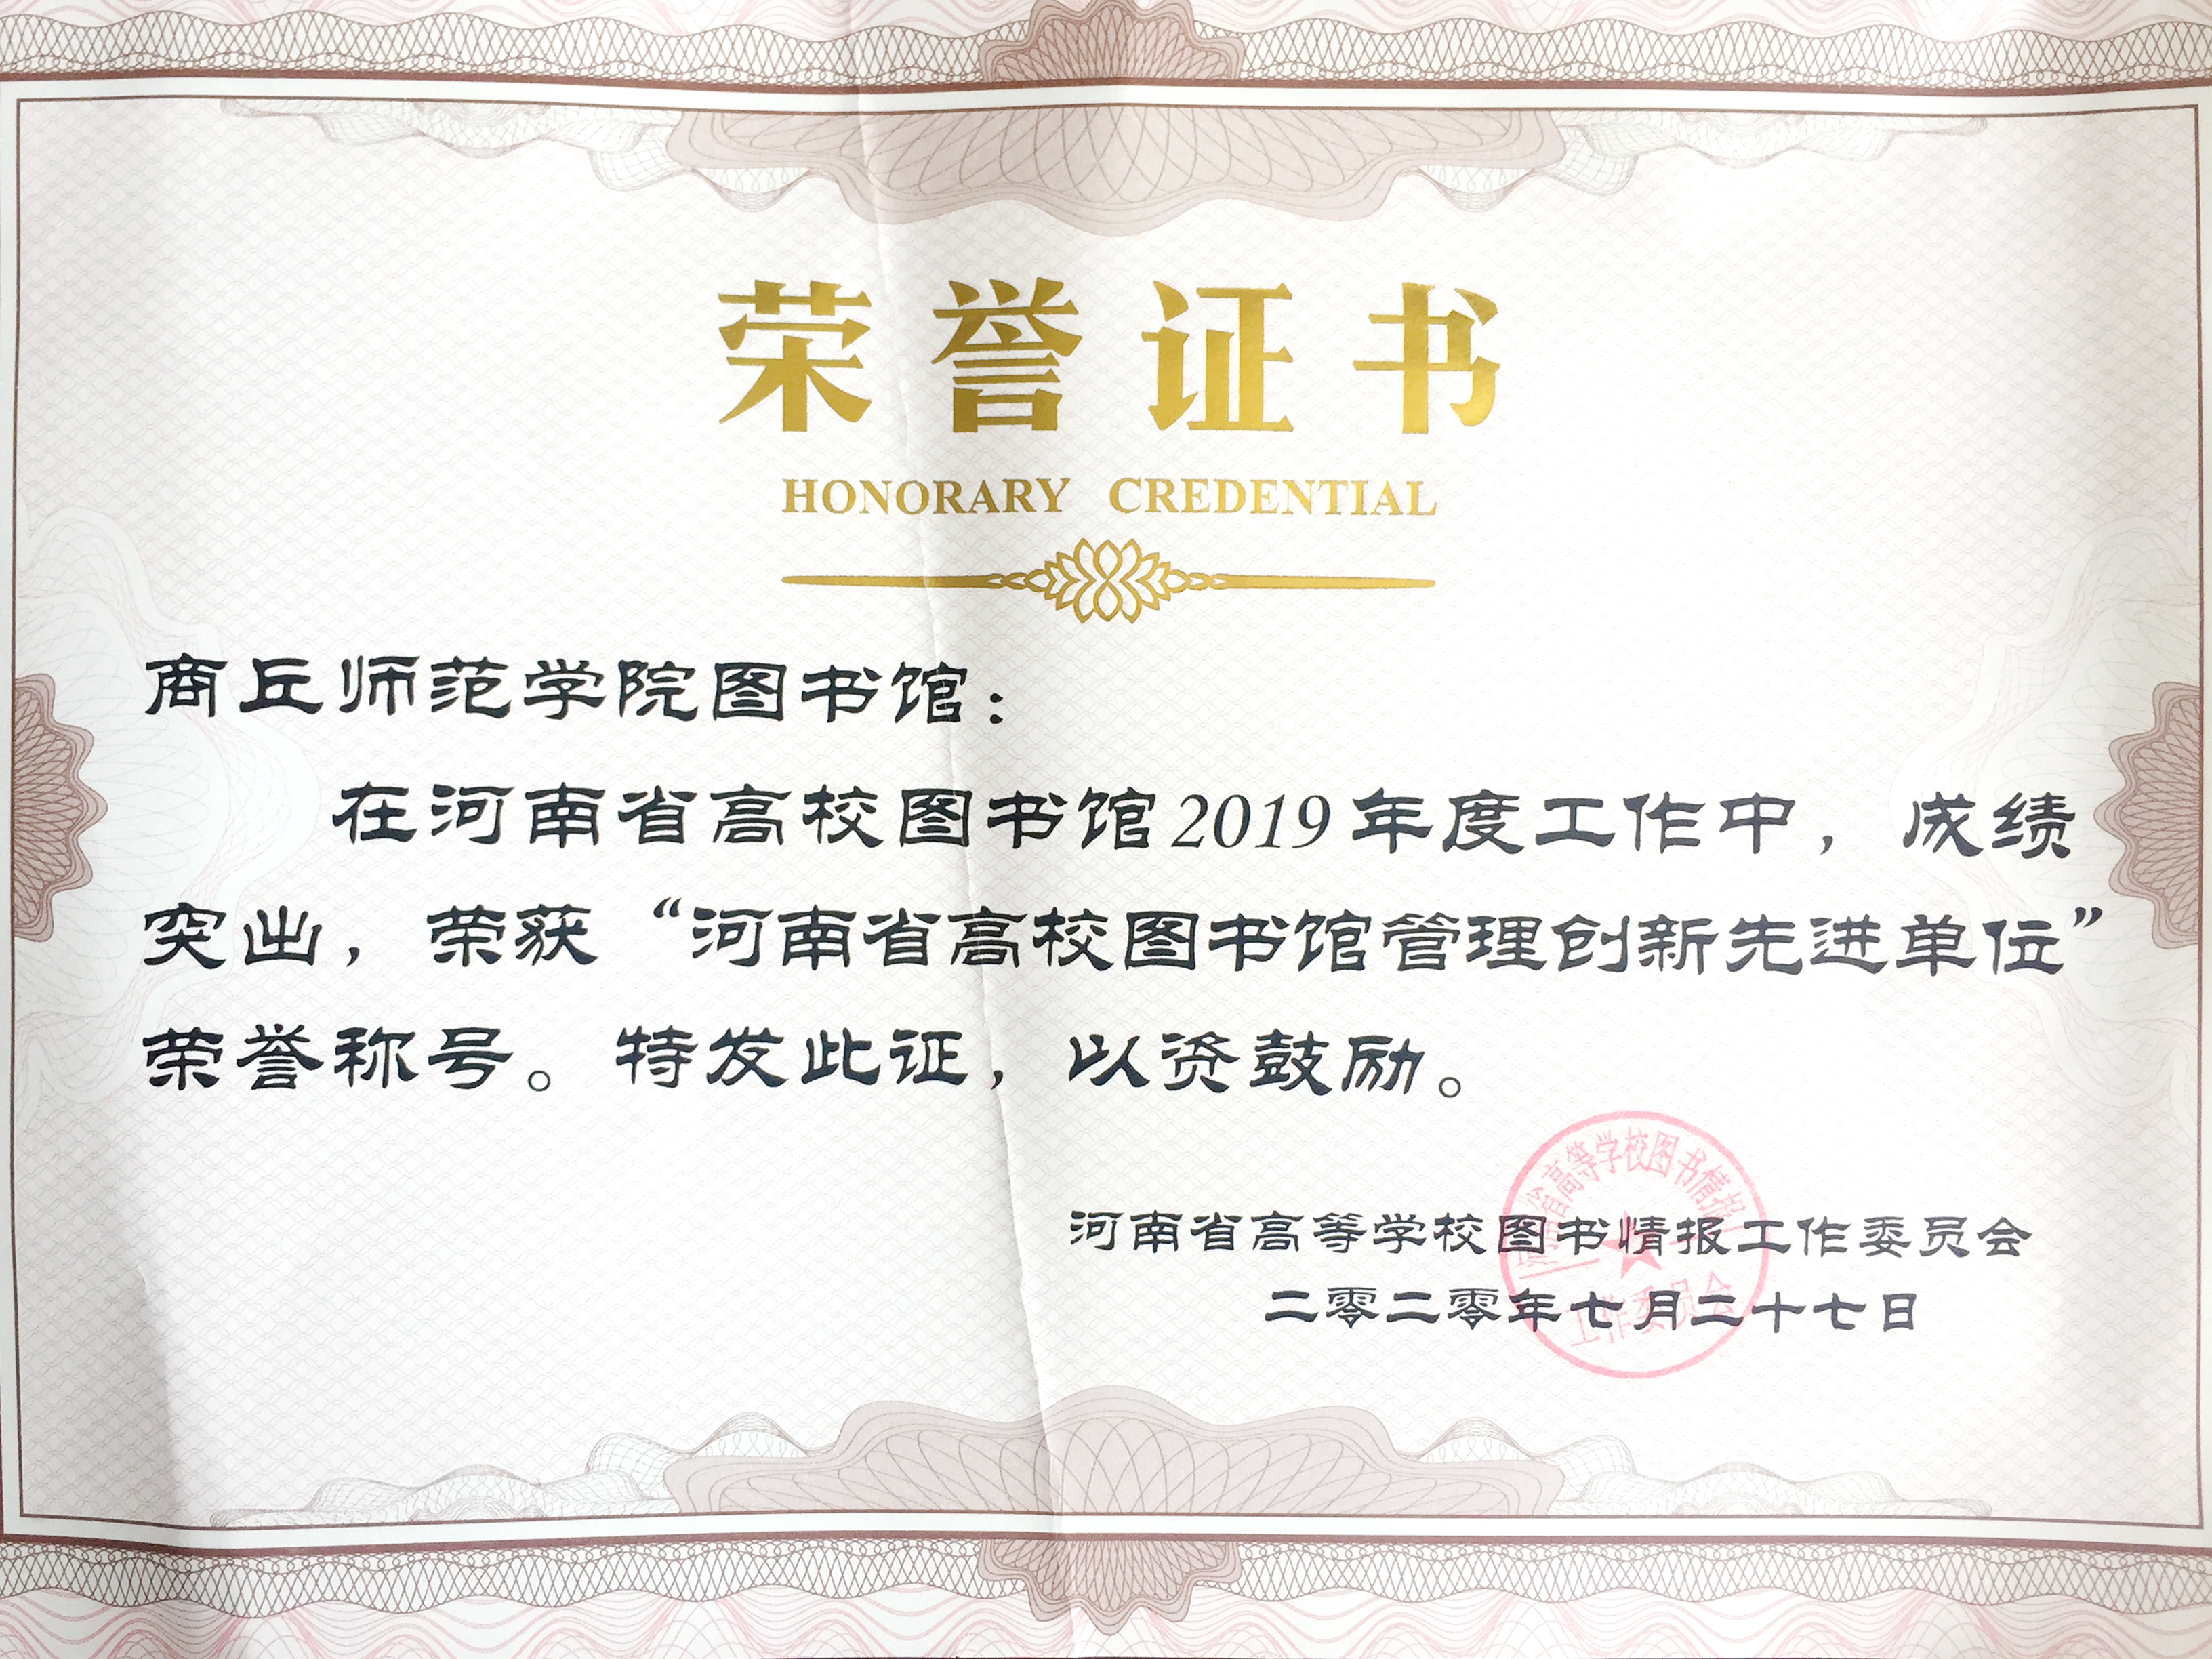 图书馆荣获“河南省高校图书馆管理创新先进单位”荣誉称号